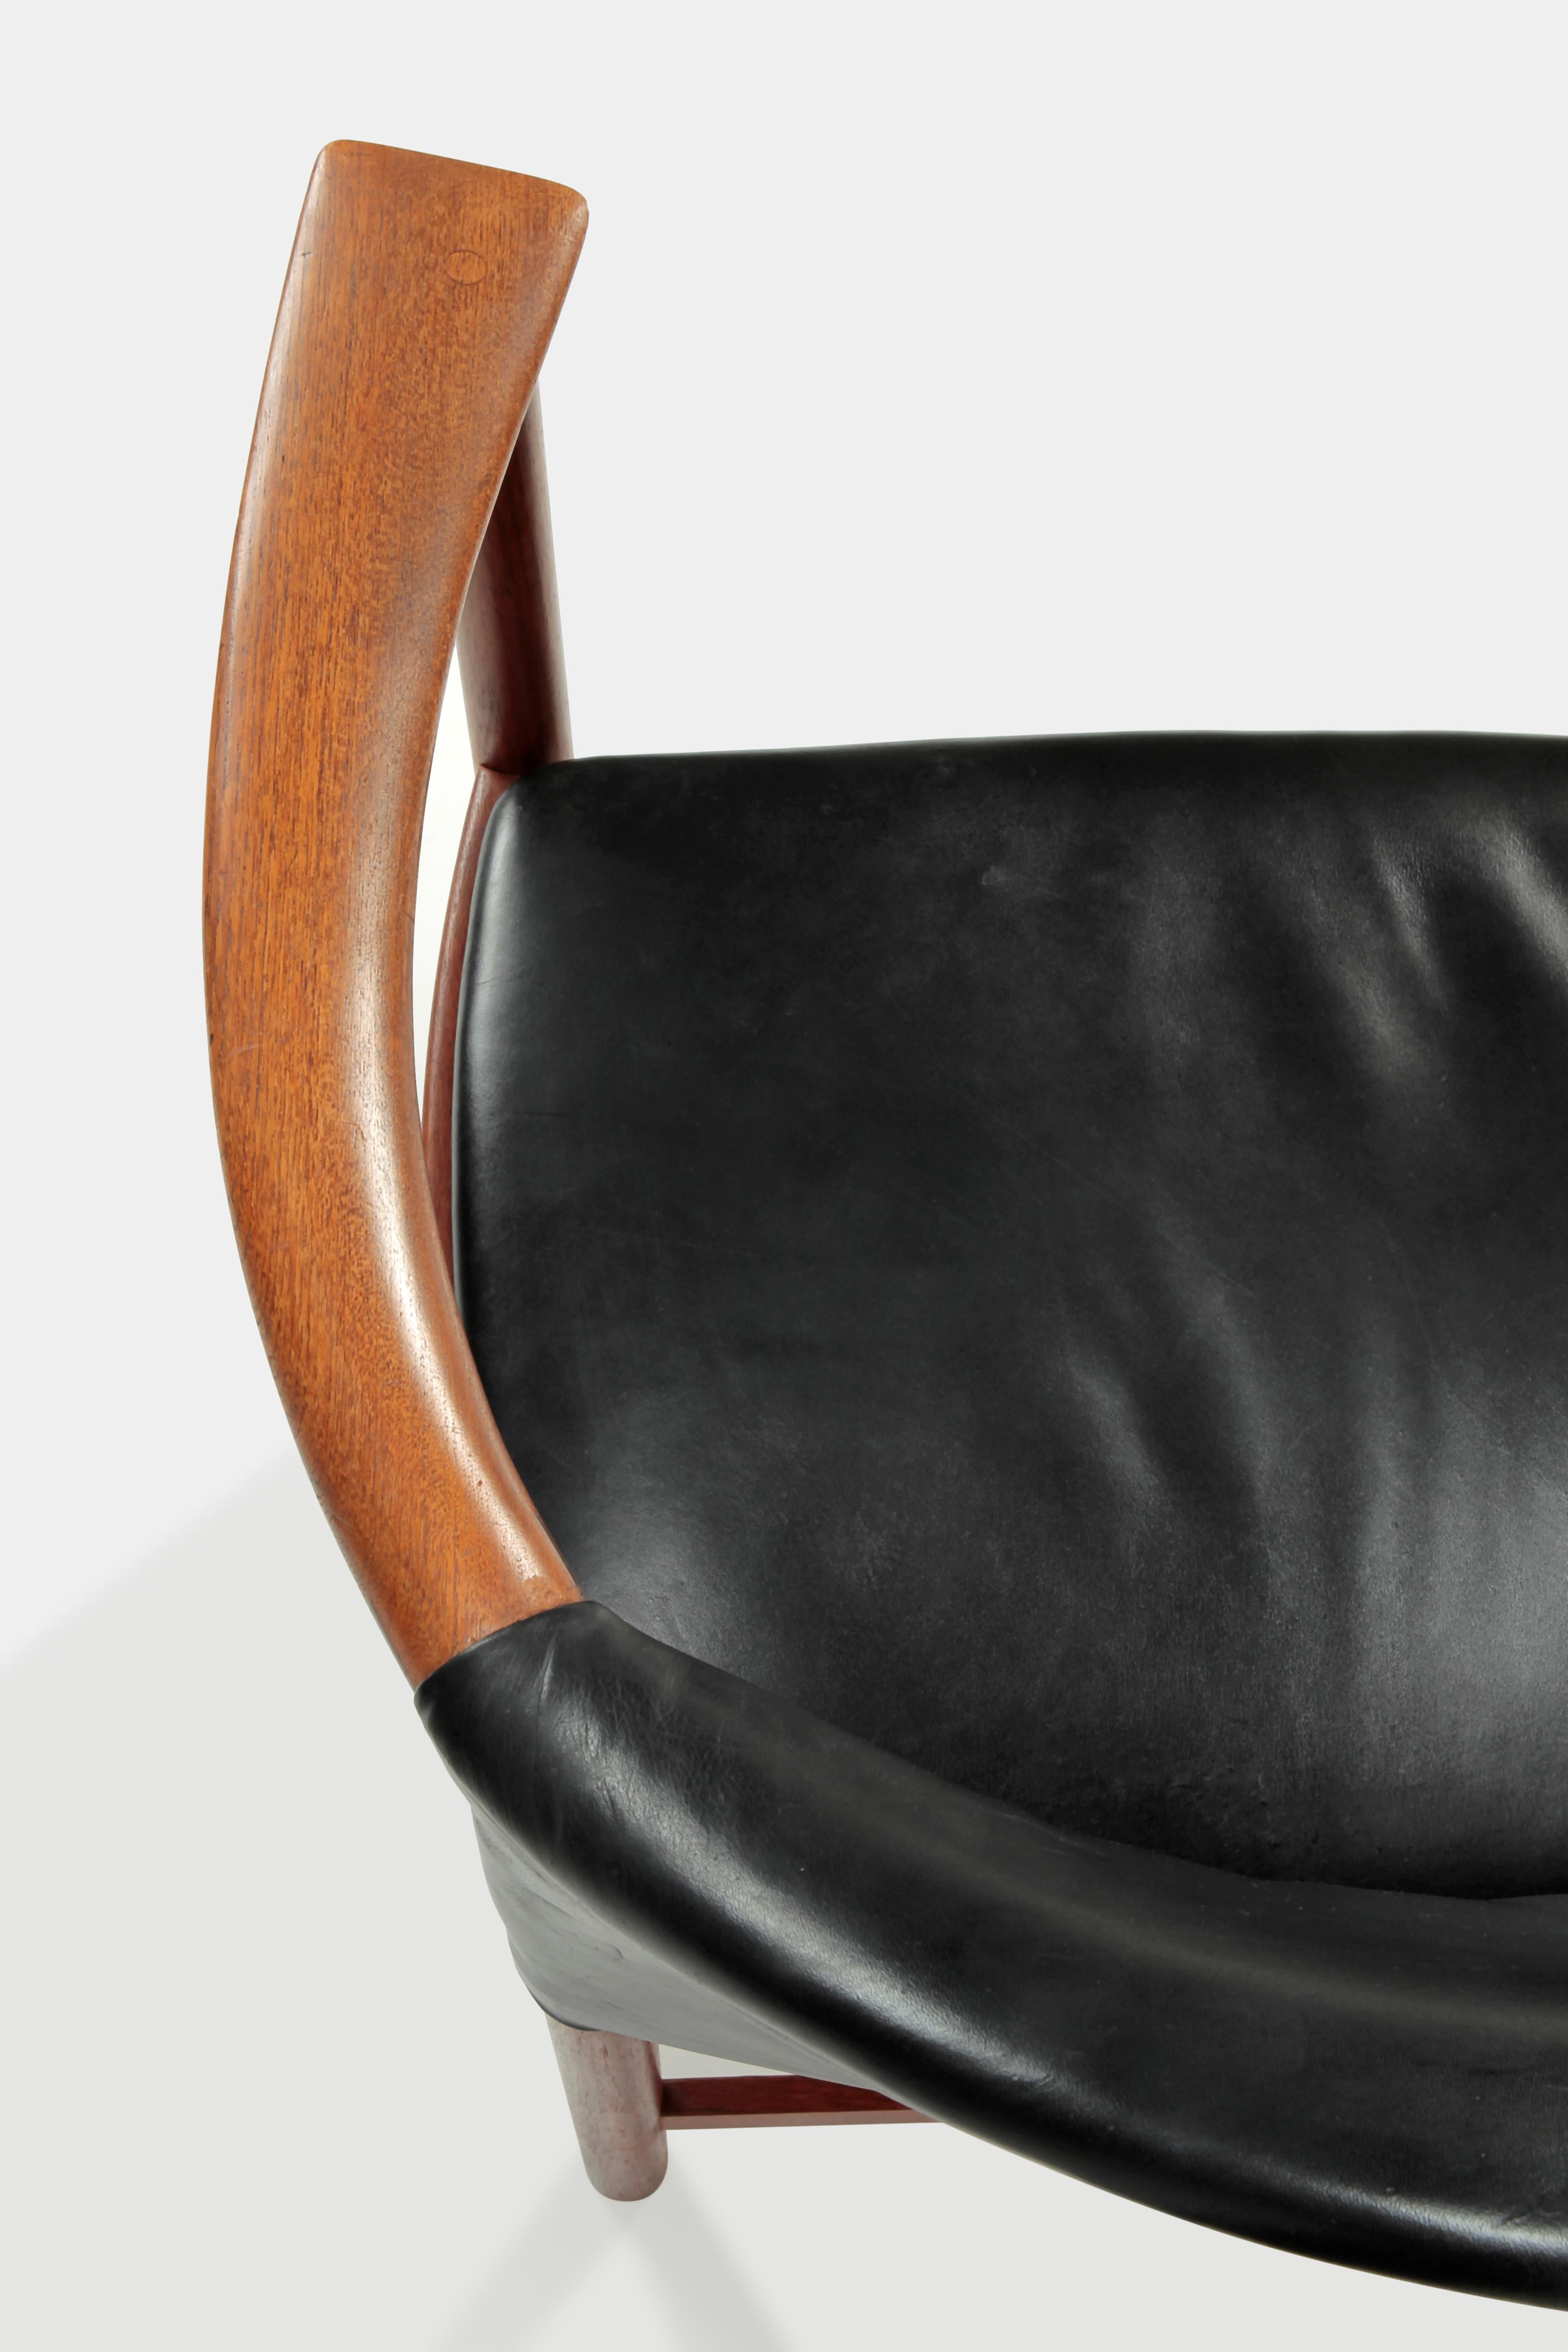 2 Kai Lyngfeldt Larsen Chairs Denmark, 1960s For Sale 7